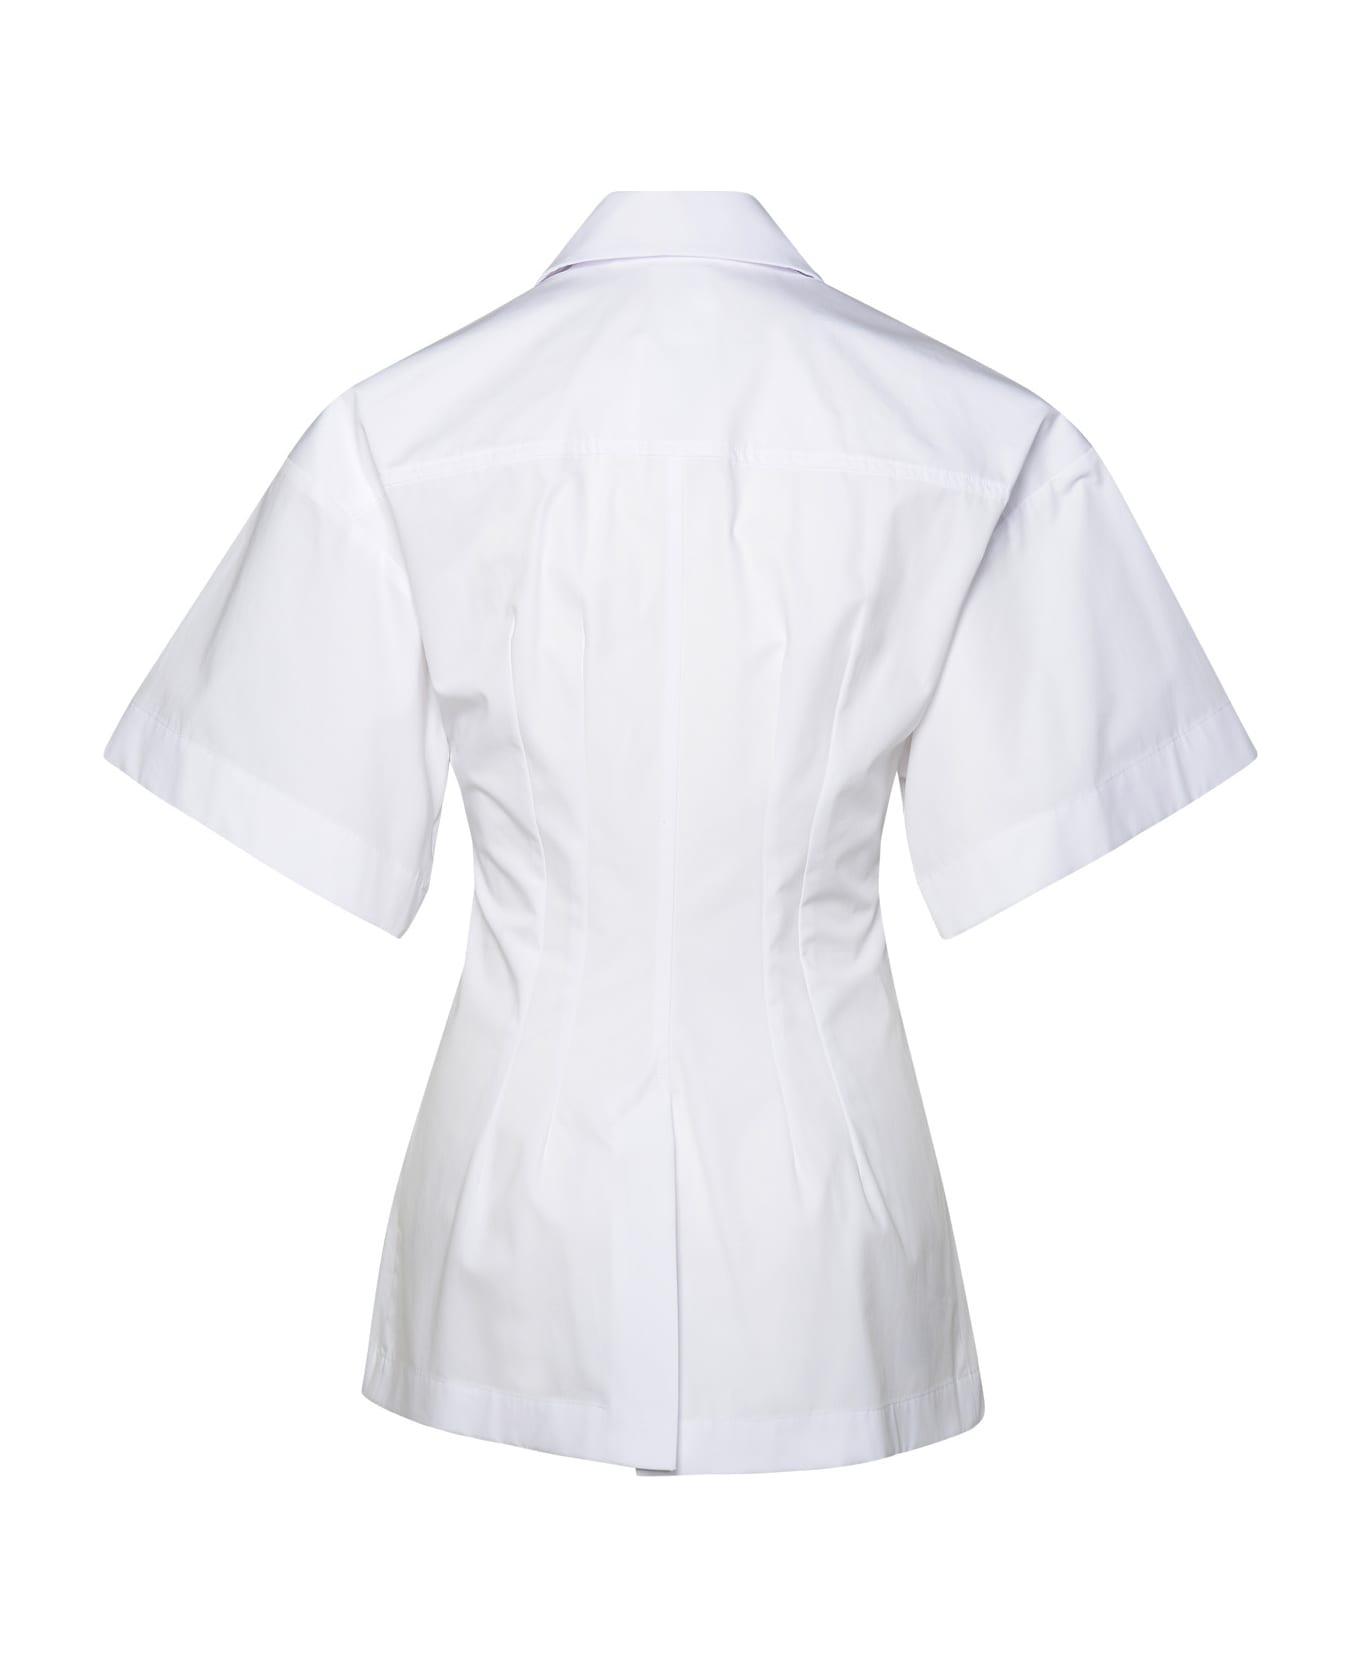 SportMax White Cotton Shirt - White シャツ